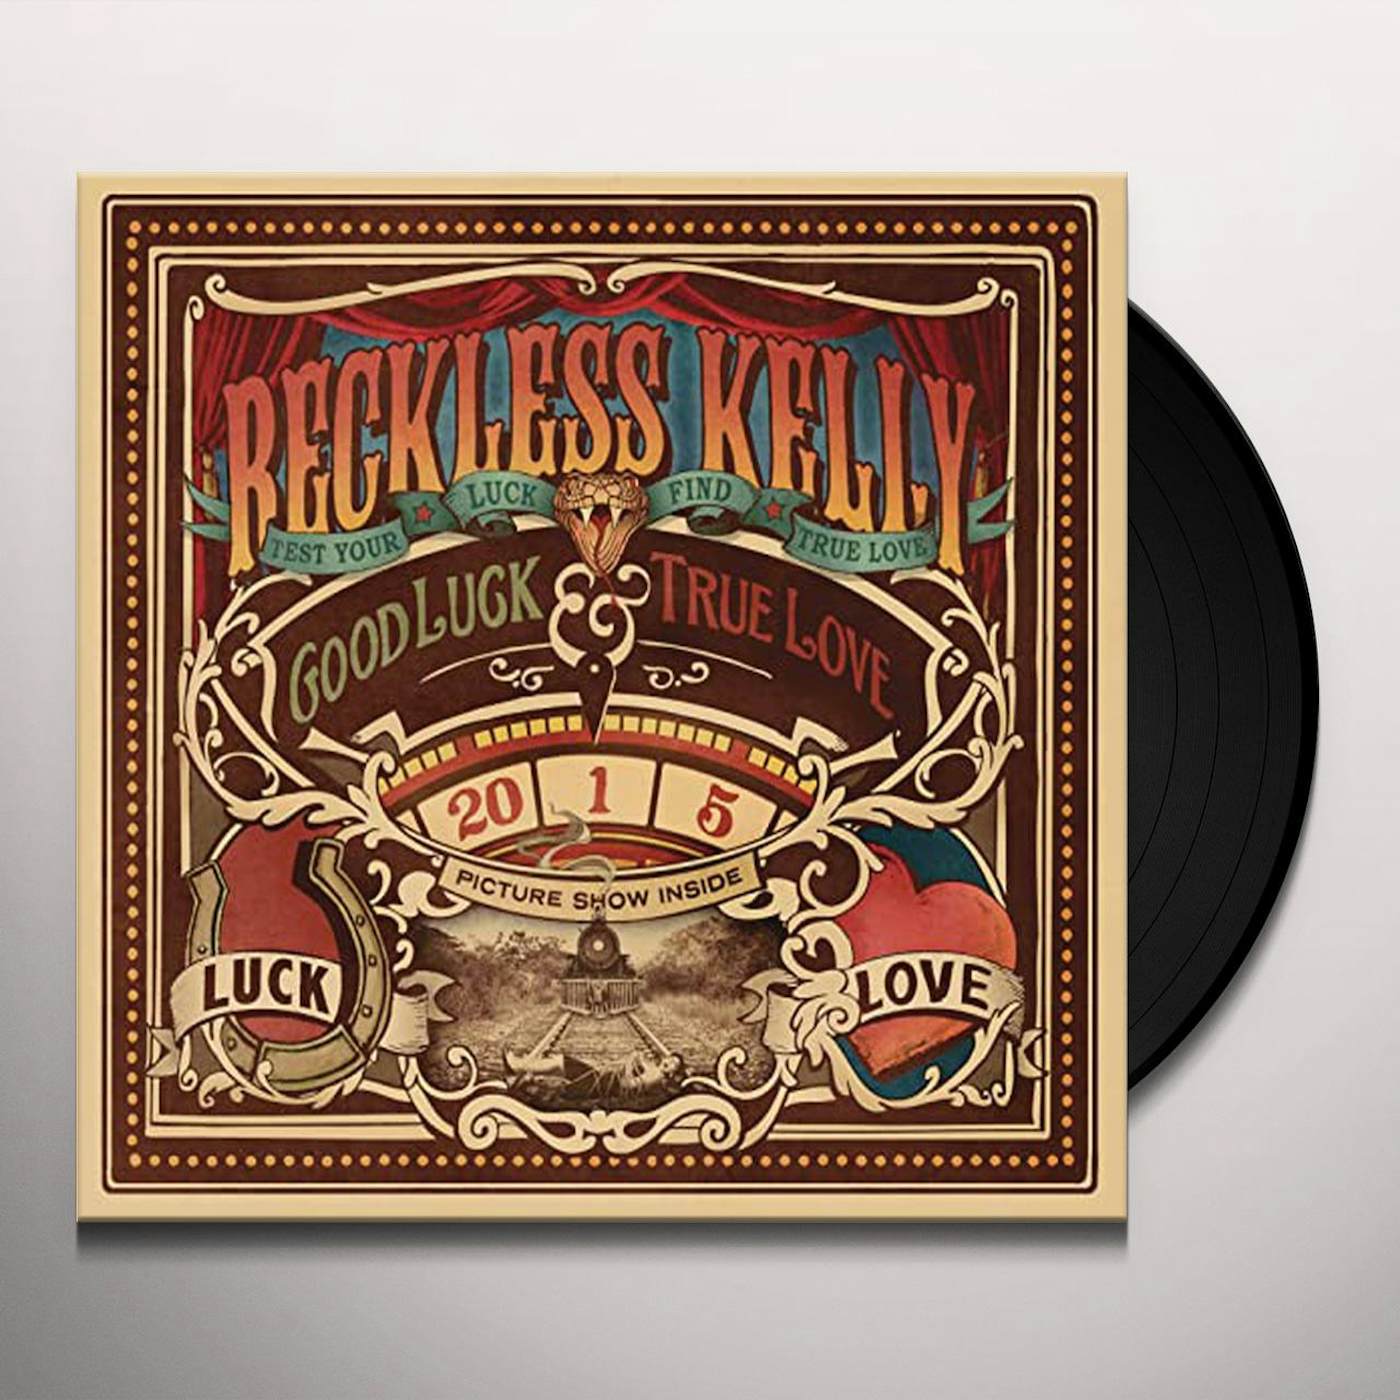 Reckless Kelly Good Luck & True Love Vinyl Record